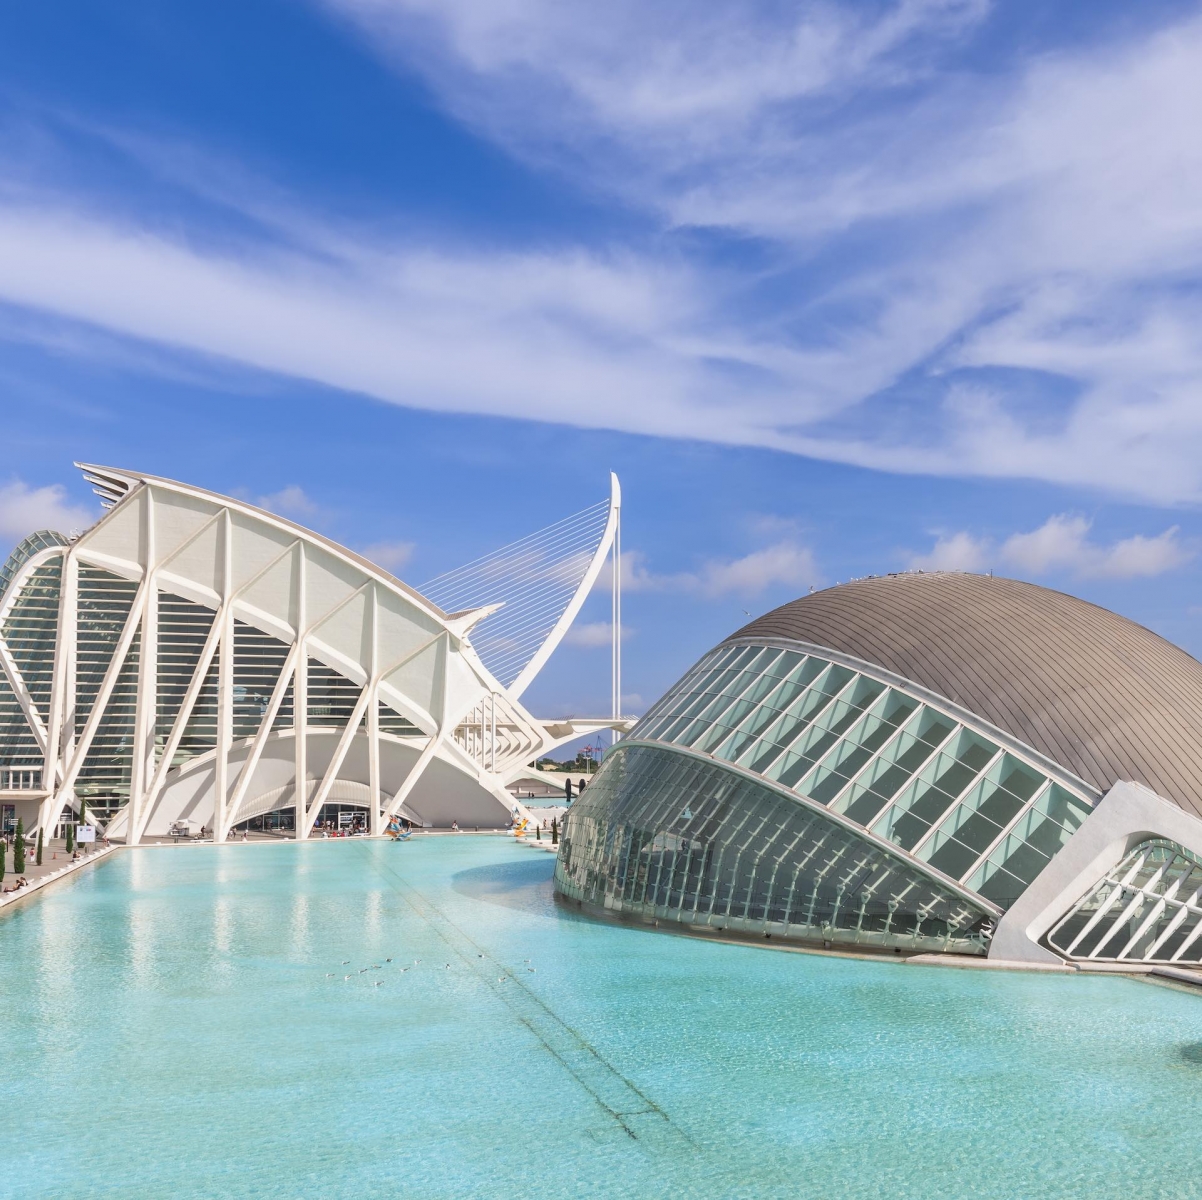 El Hemisfèric es un edificio singular y espectacular, diseñado por Santiago Calatrava, que representa un gran ojo humano, el ojo de la sabiduría.  Este elemento simboliza la mirada y observación del mundo que los visitantes descubren a través de sorprendentes proyecciones audiovisuales.